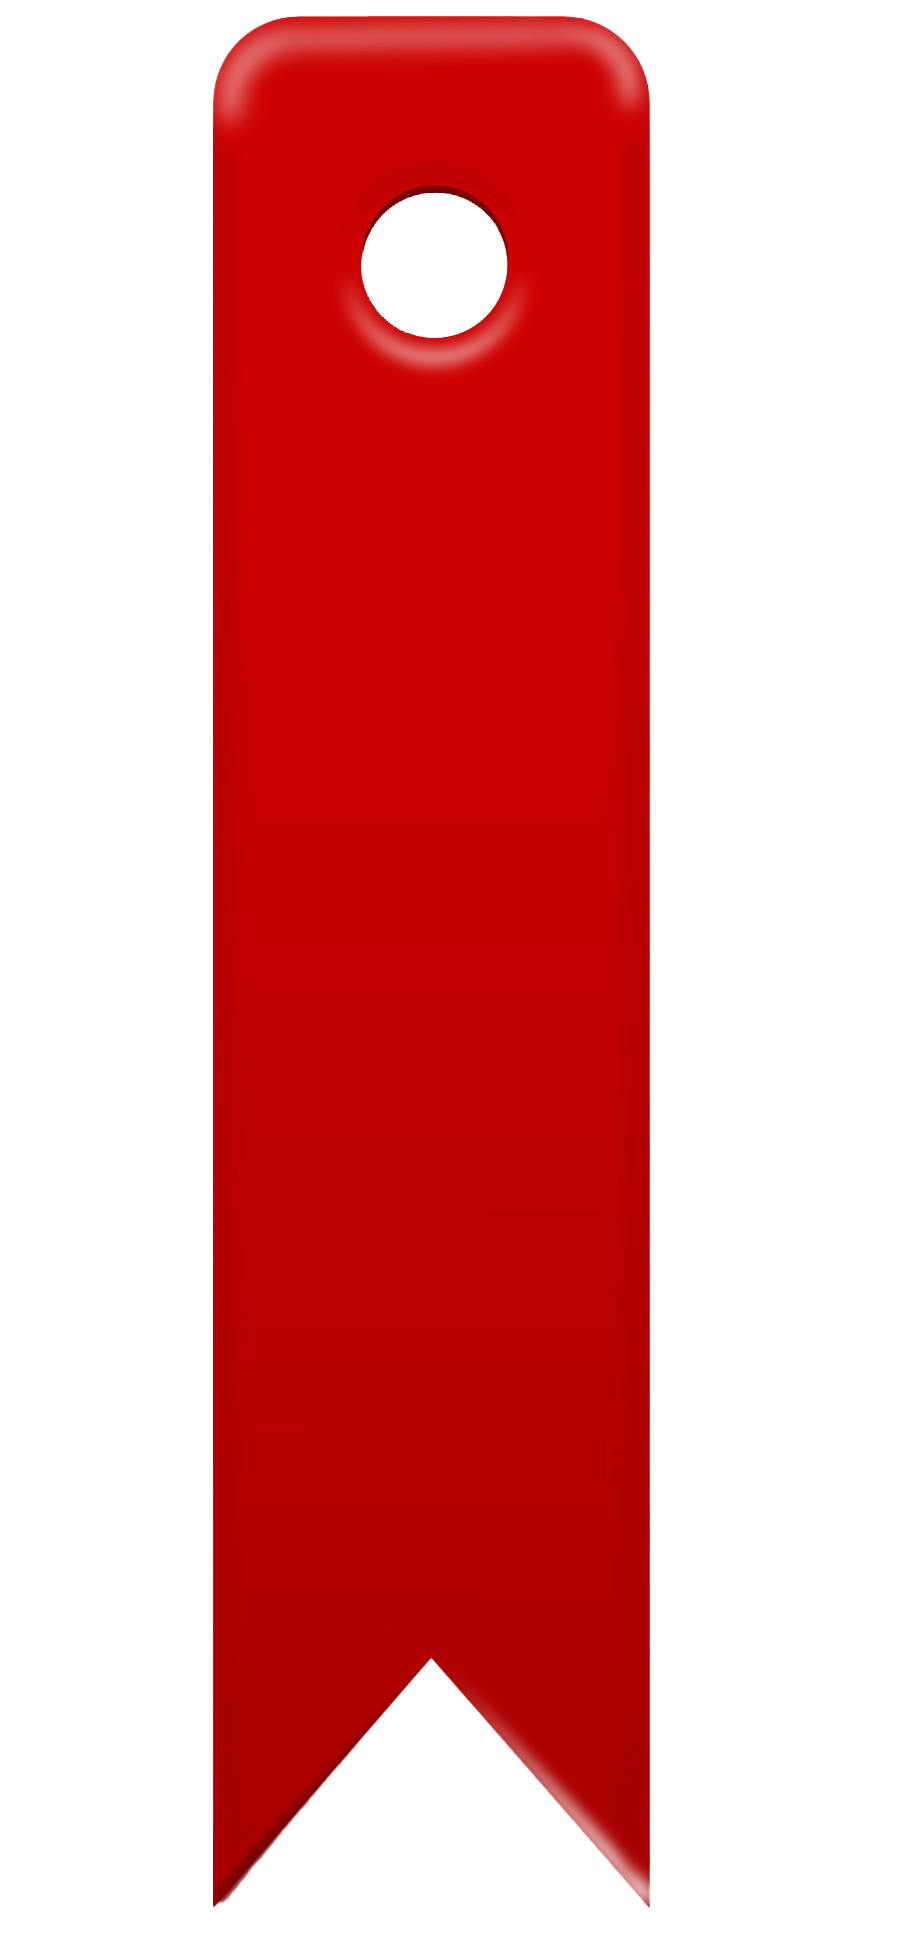 Segnalibro rosso PNG Picture